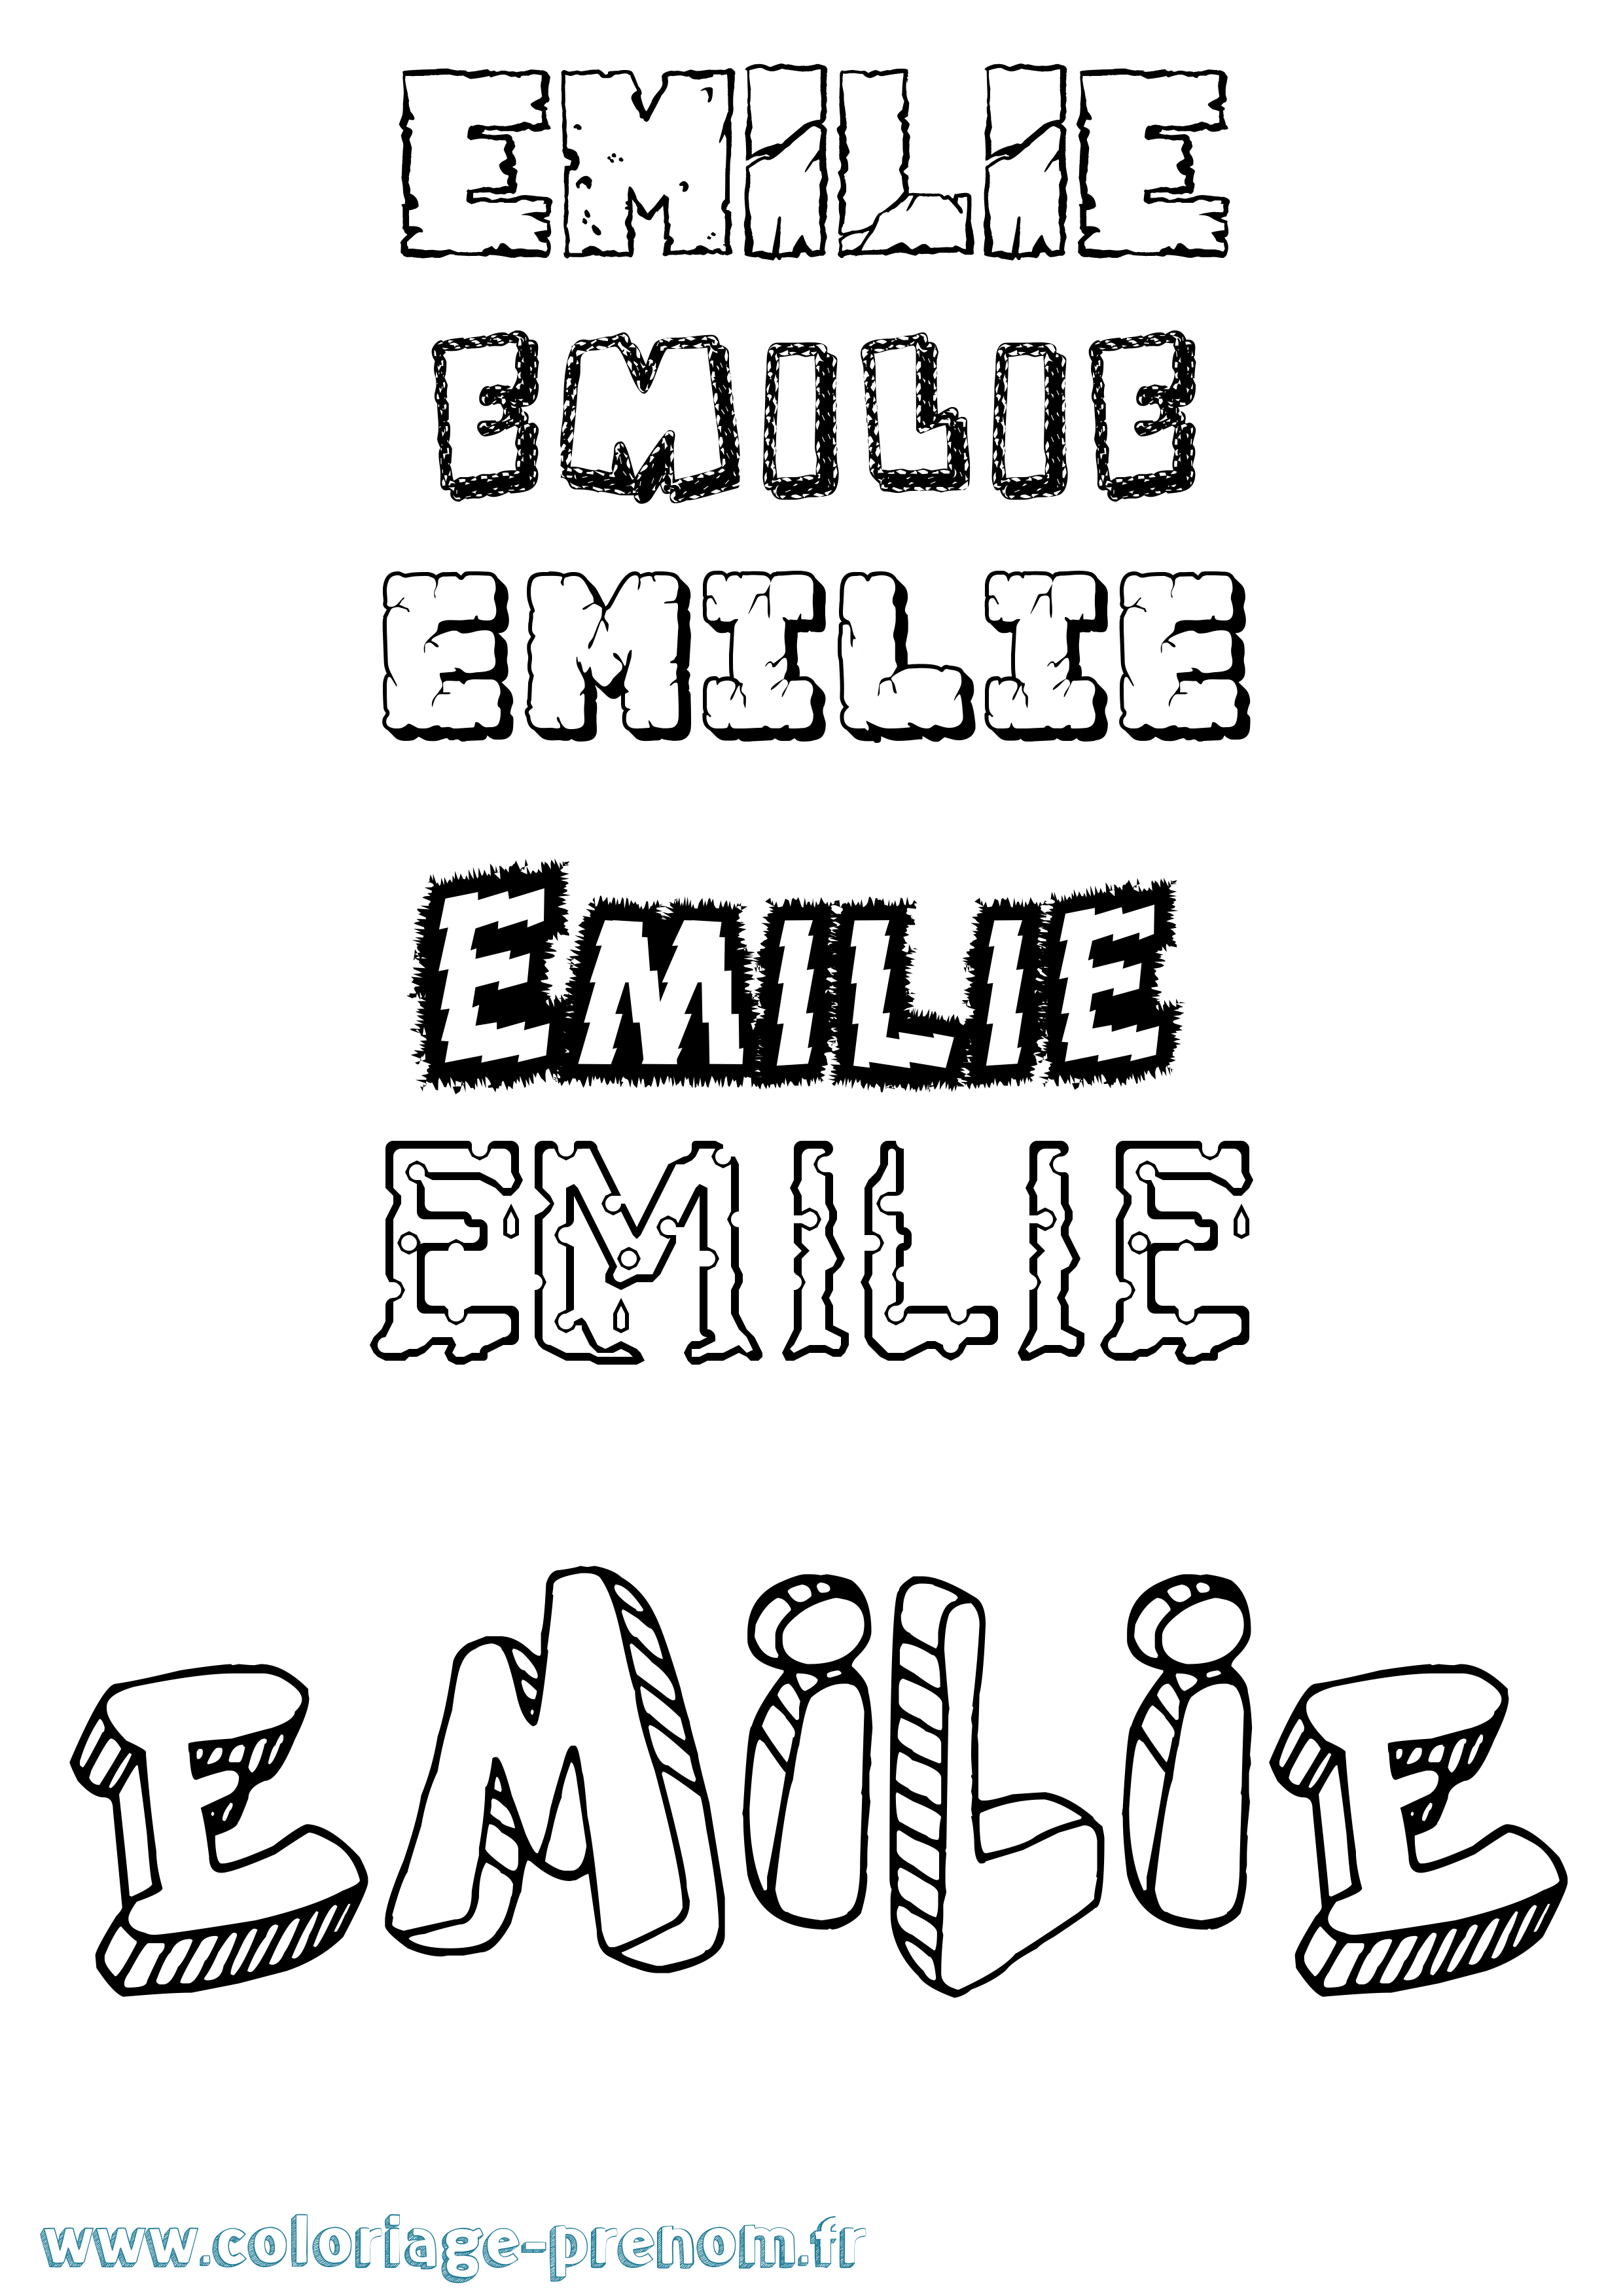 Coloriage prénom Emilie Destructuré